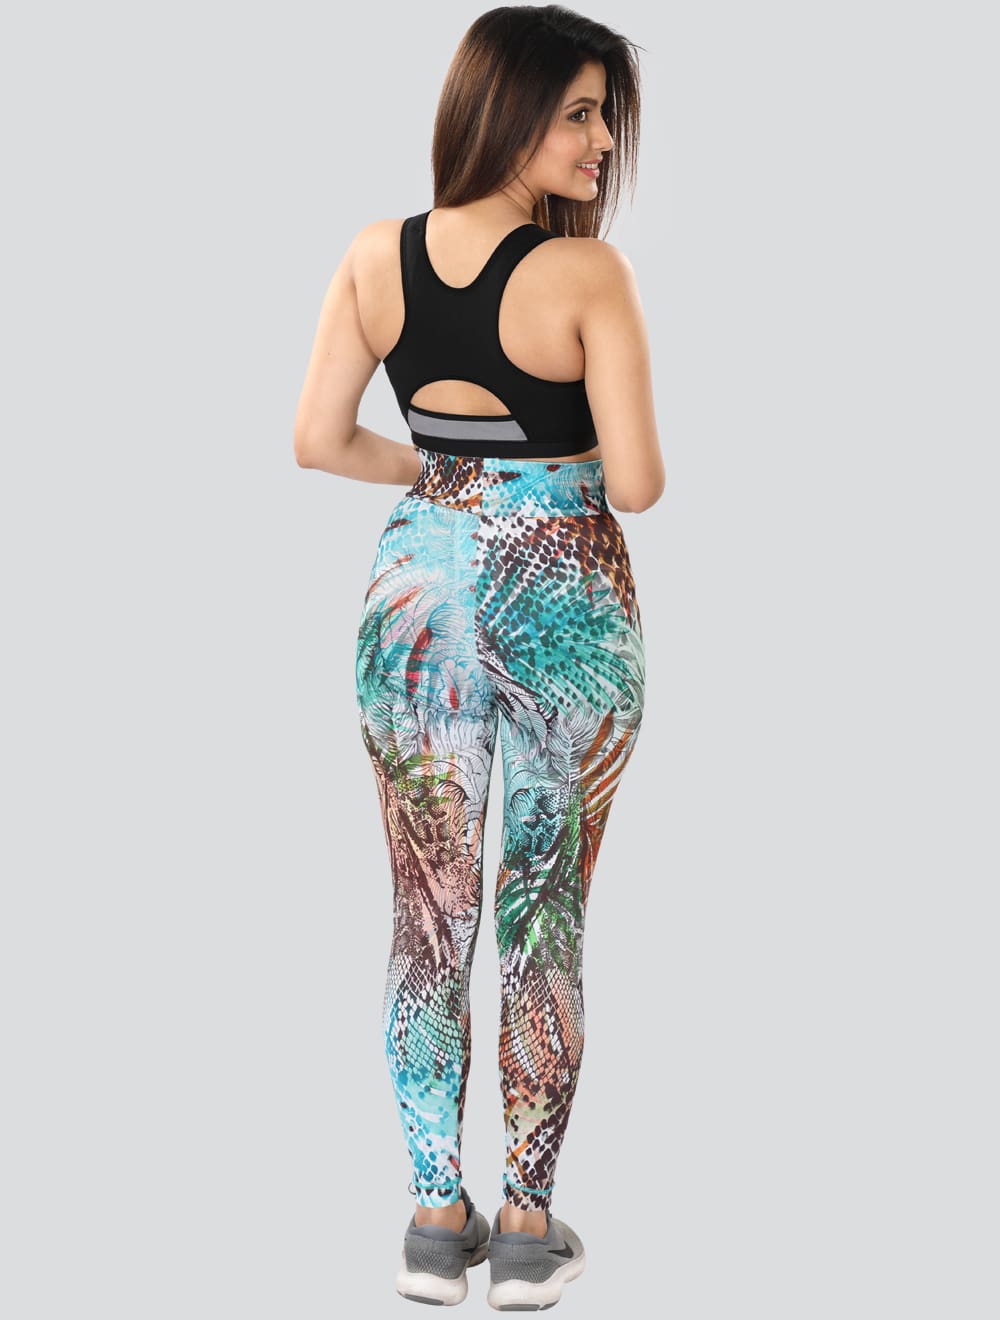 Dermawear DP-5023 Digitally Printed Active Pants at Rs 590.00